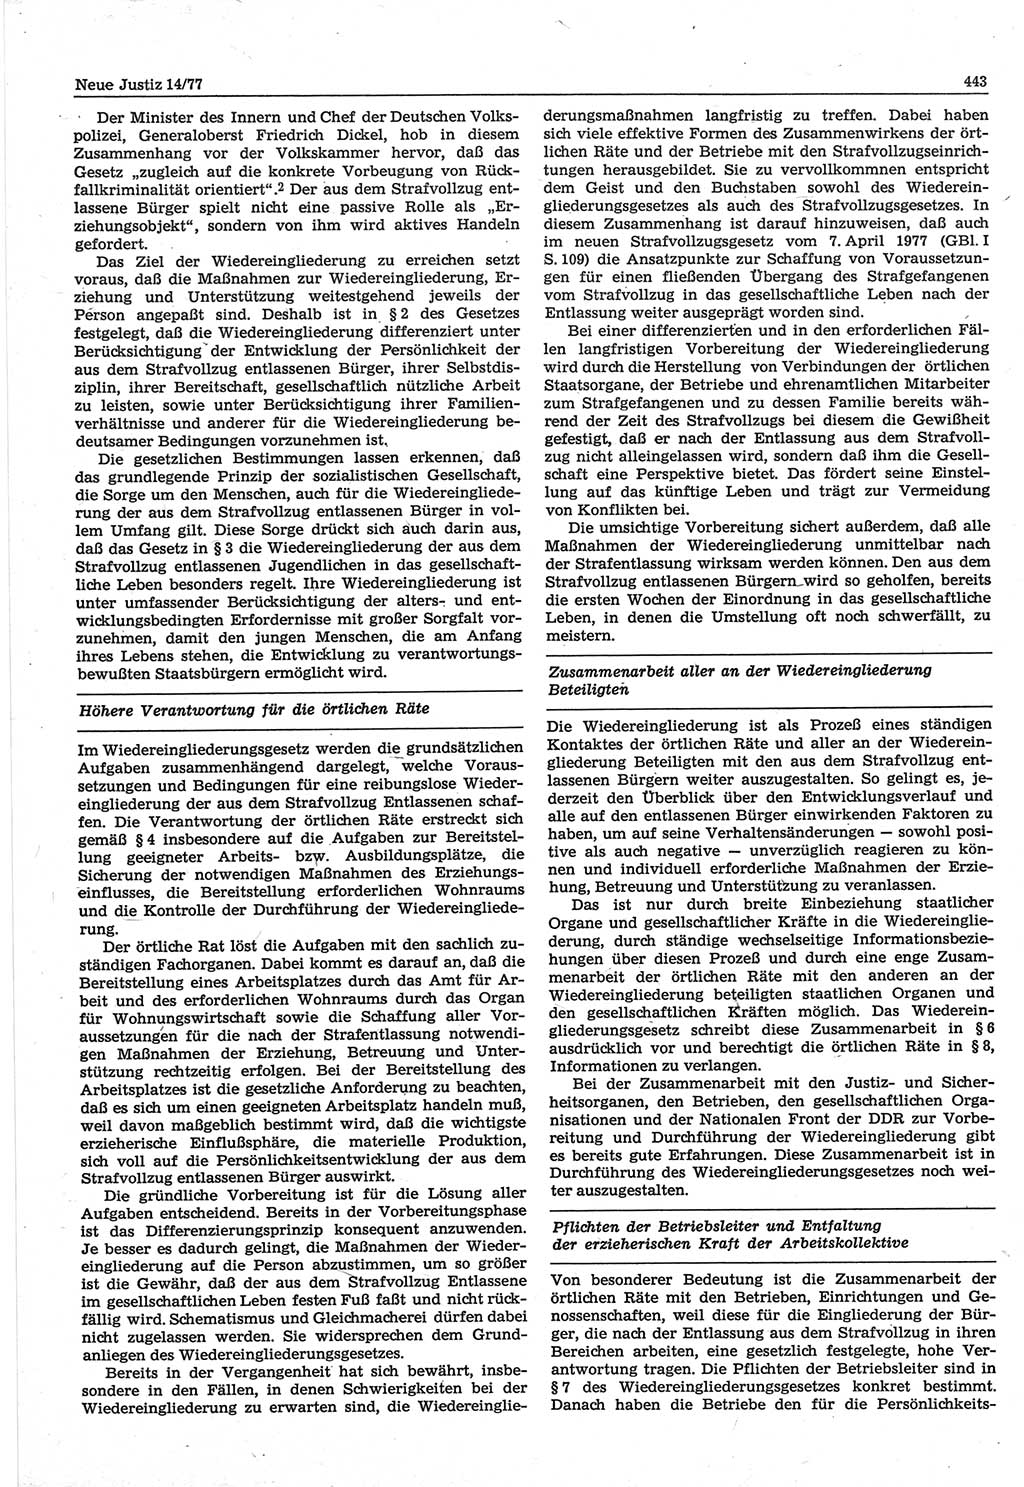 Neue Justiz (NJ), Zeitschrift für Recht und Rechtswissenschaft-Zeitschrift, sozialistisches Recht und Gesetzlichkeit, 31. Jahrgang 1977, Seite 443 (NJ DDR 1977, S. 443)